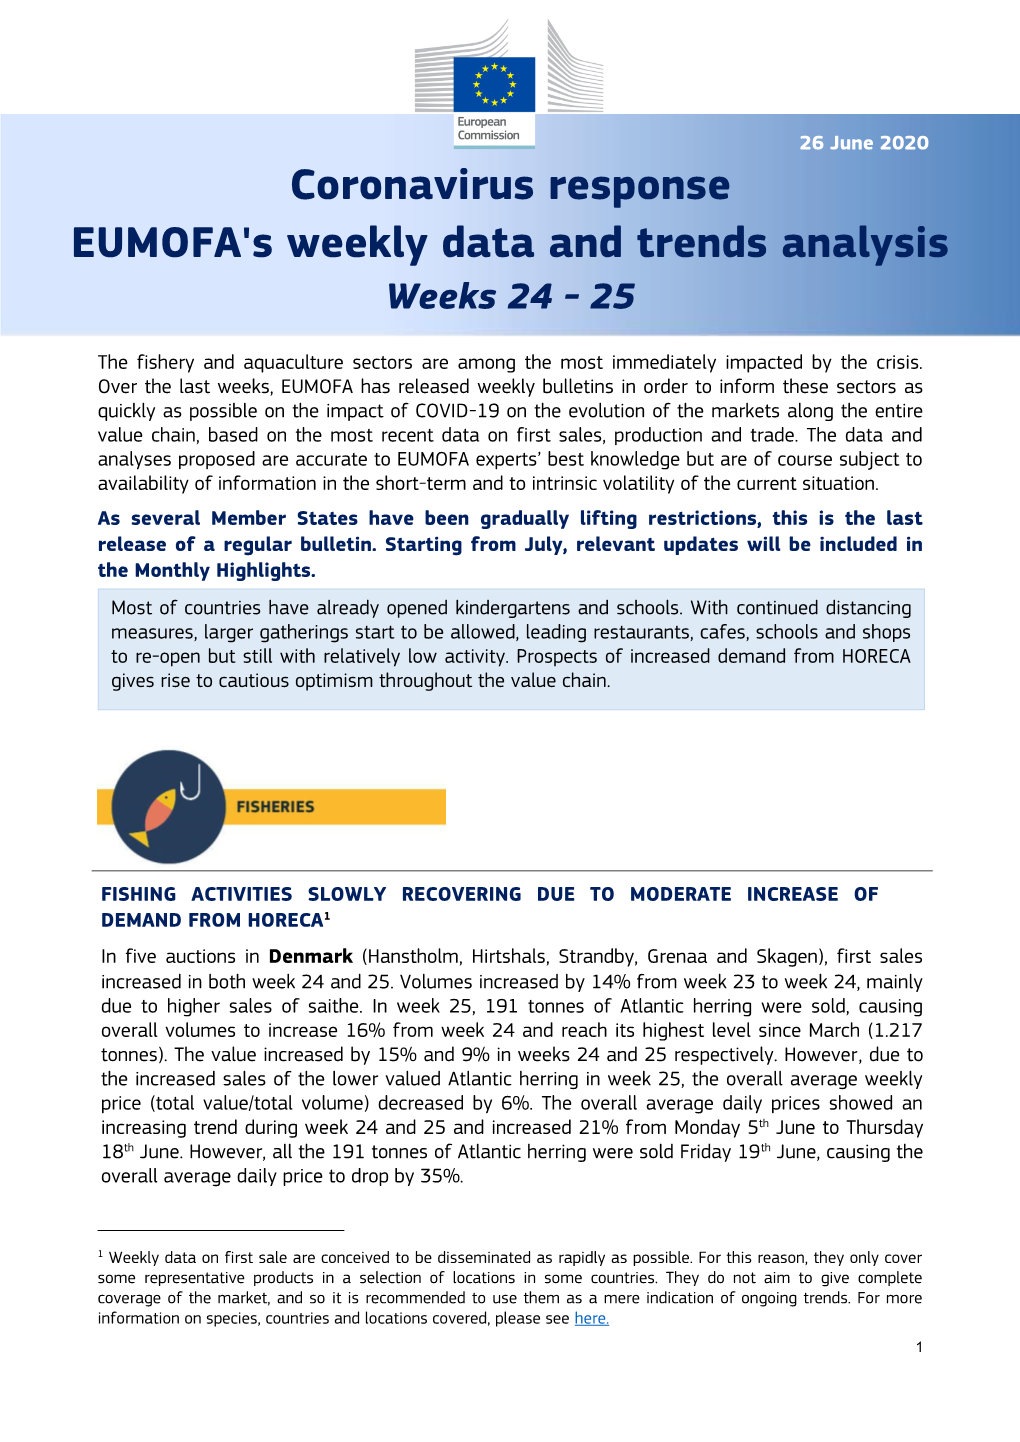 Coronavirus Response EUMOFA's Weekly Data and Trends Analysis Weeks 24 - 25